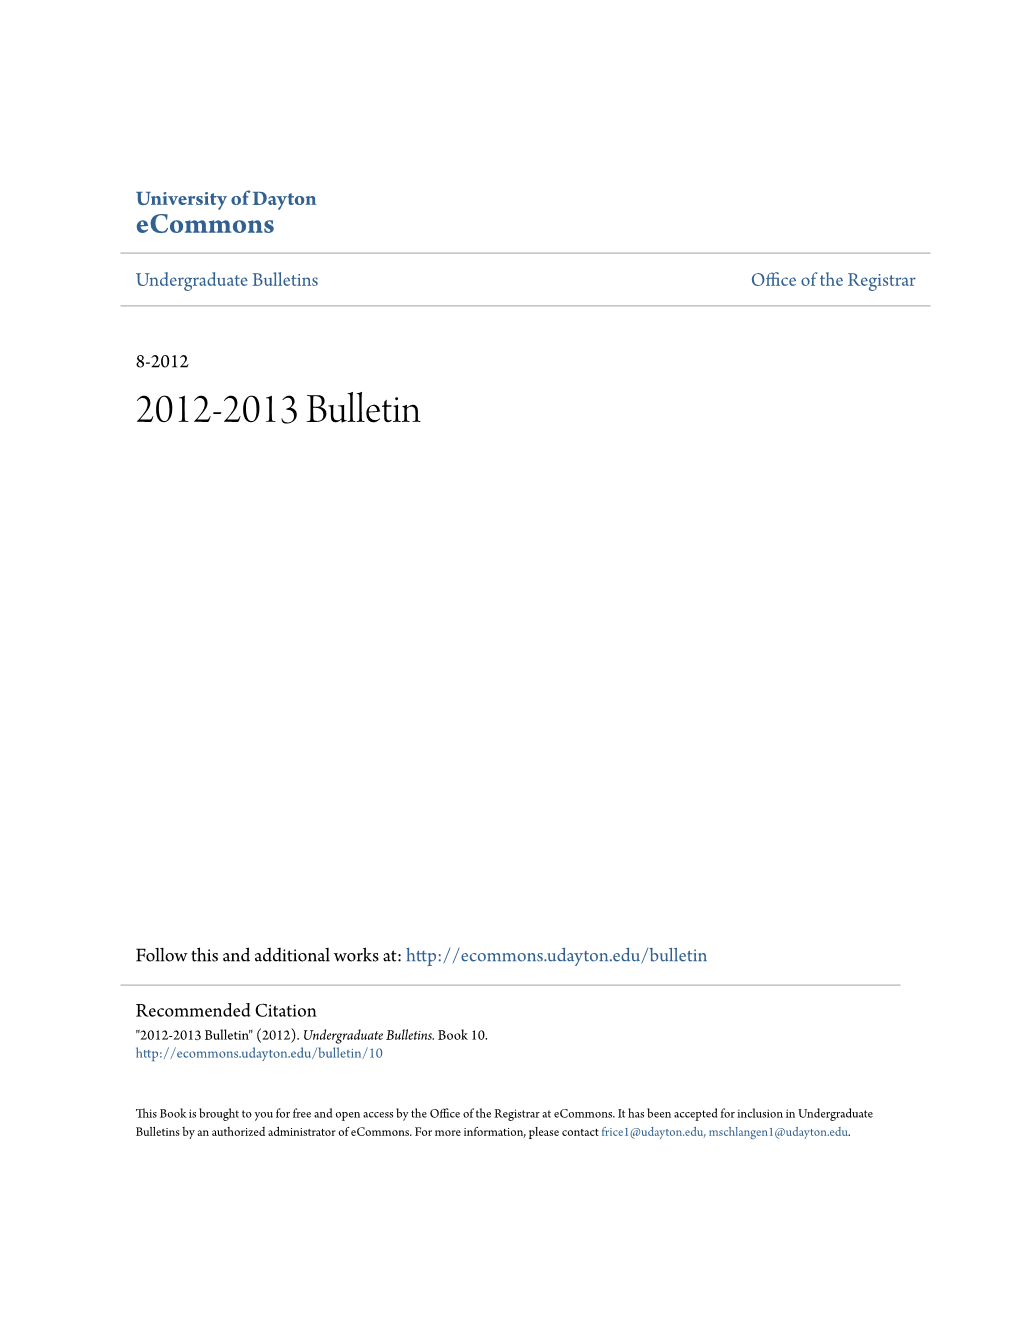 2012-2013 Bulletin